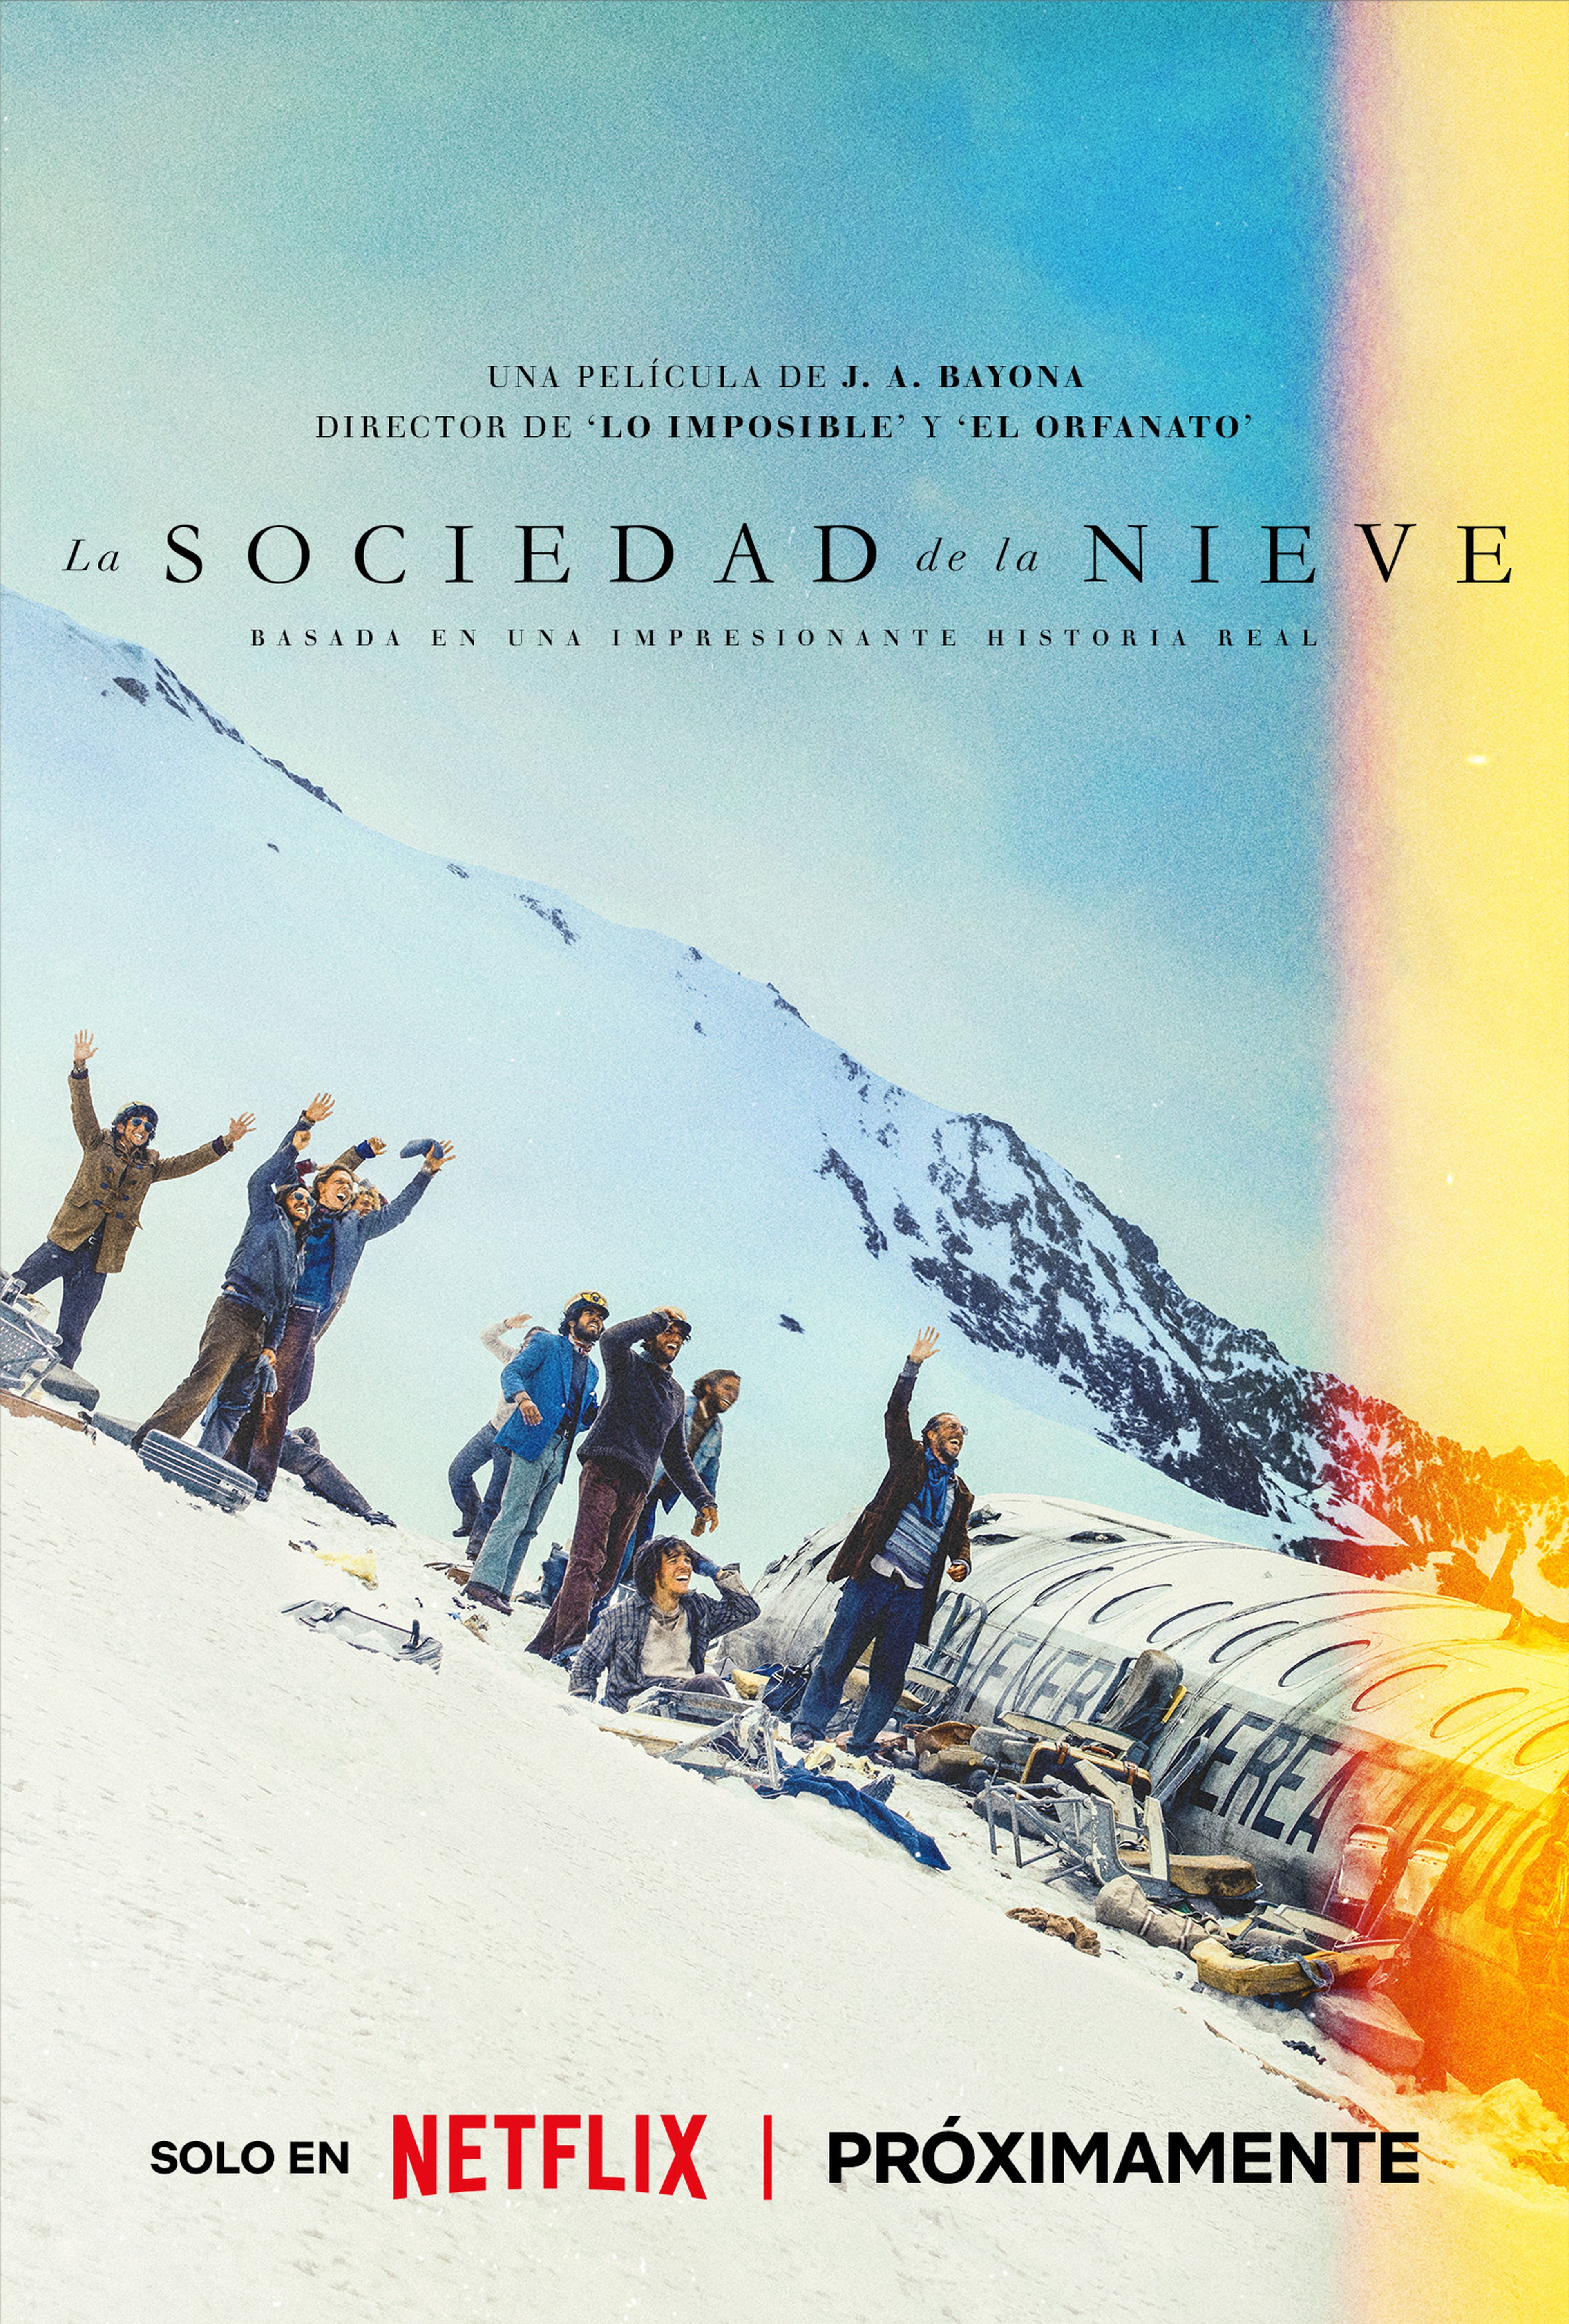 Tráiler y póster de La sociedad de la nieve, lo nuevo de J.A.